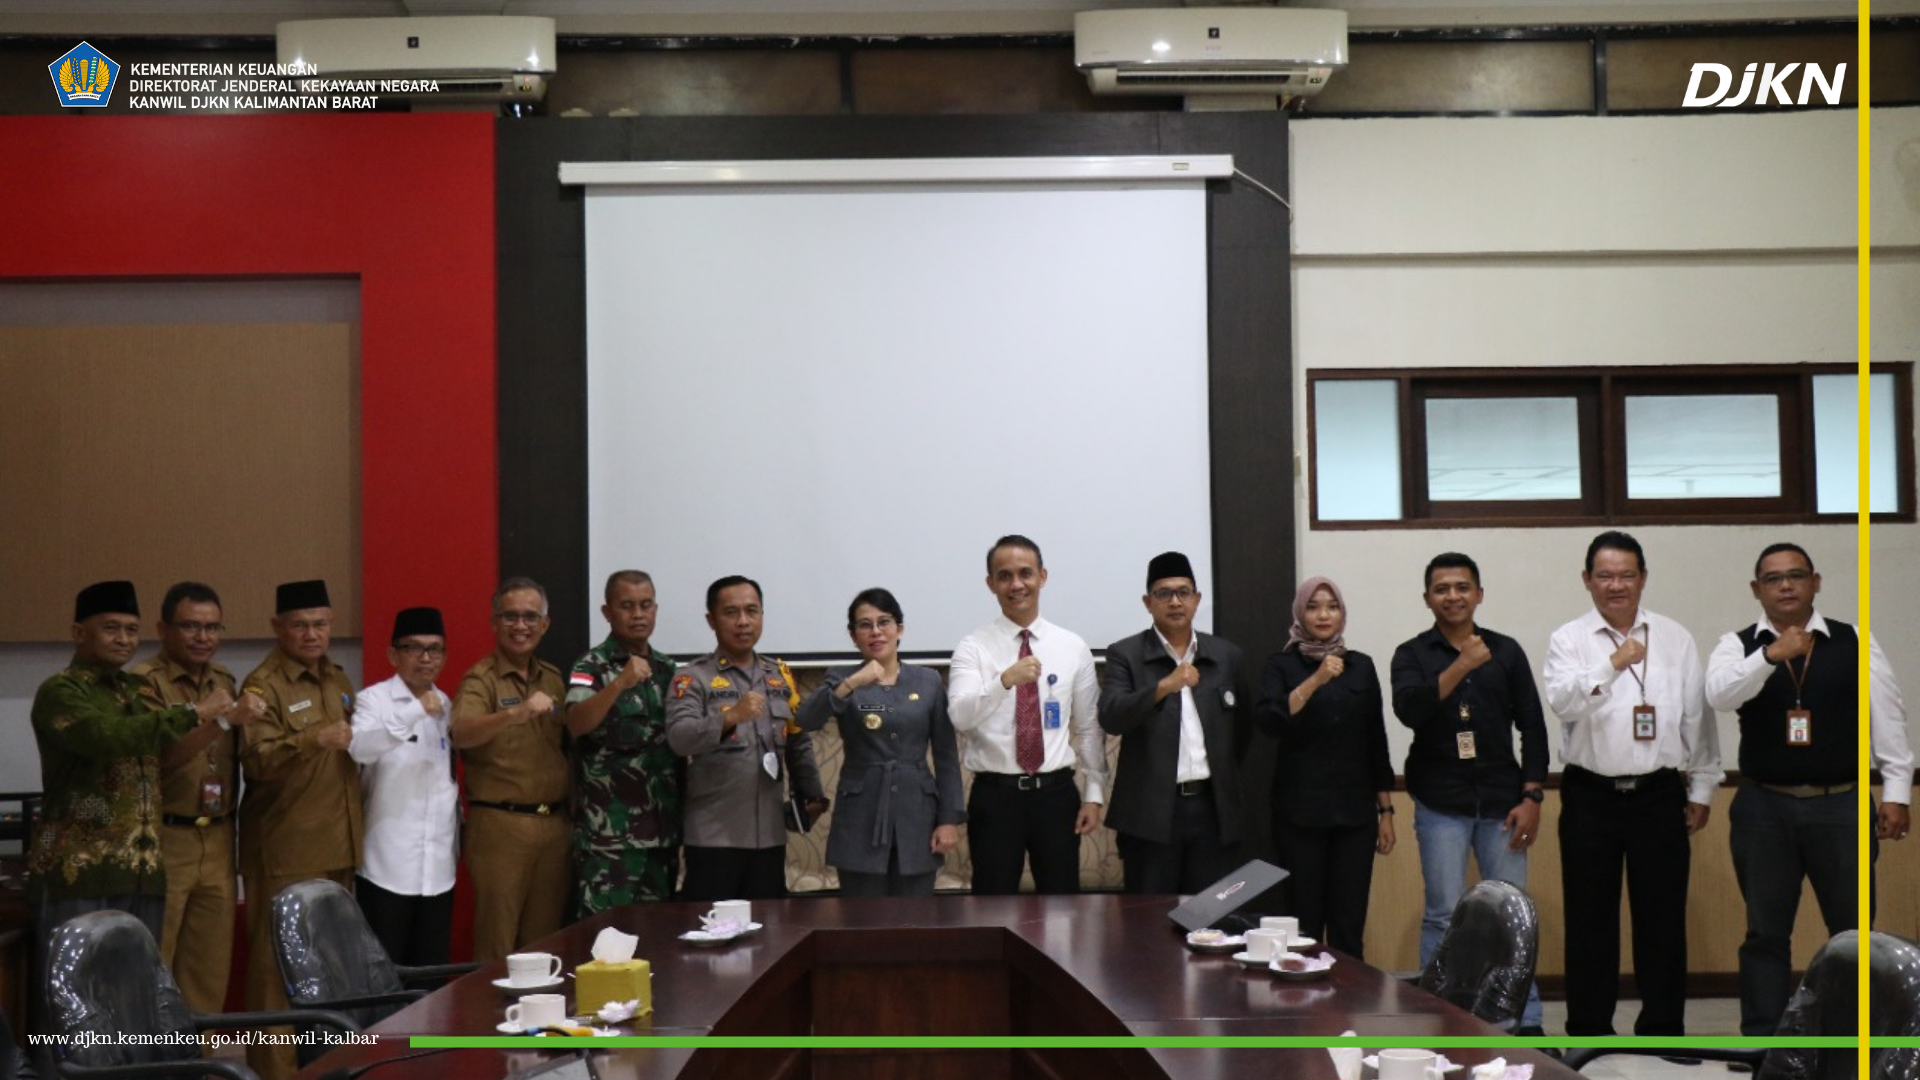 Kanwil DJKN Kalbar Mendukung Moderasi Beragama Dalam Bingkai NKRI dan Pencanangan Tahun Toleransi 2022 Launching di Kota Singkawang